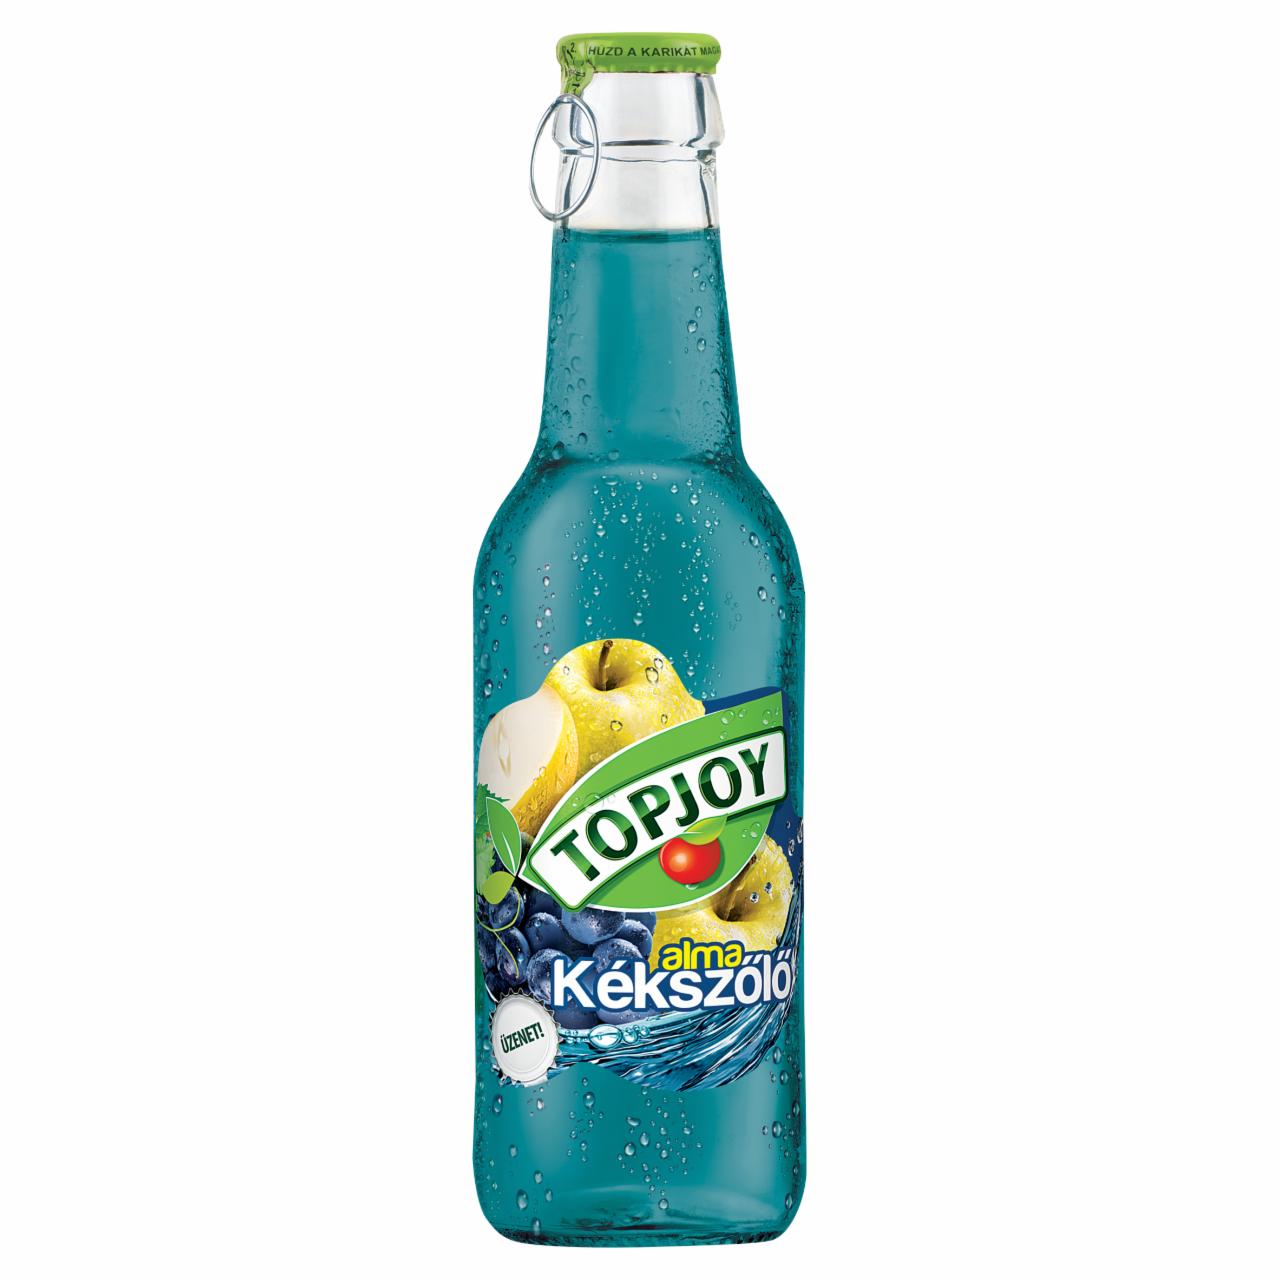 Képek - Topjoy alma-kékszőlő ital 250 ml